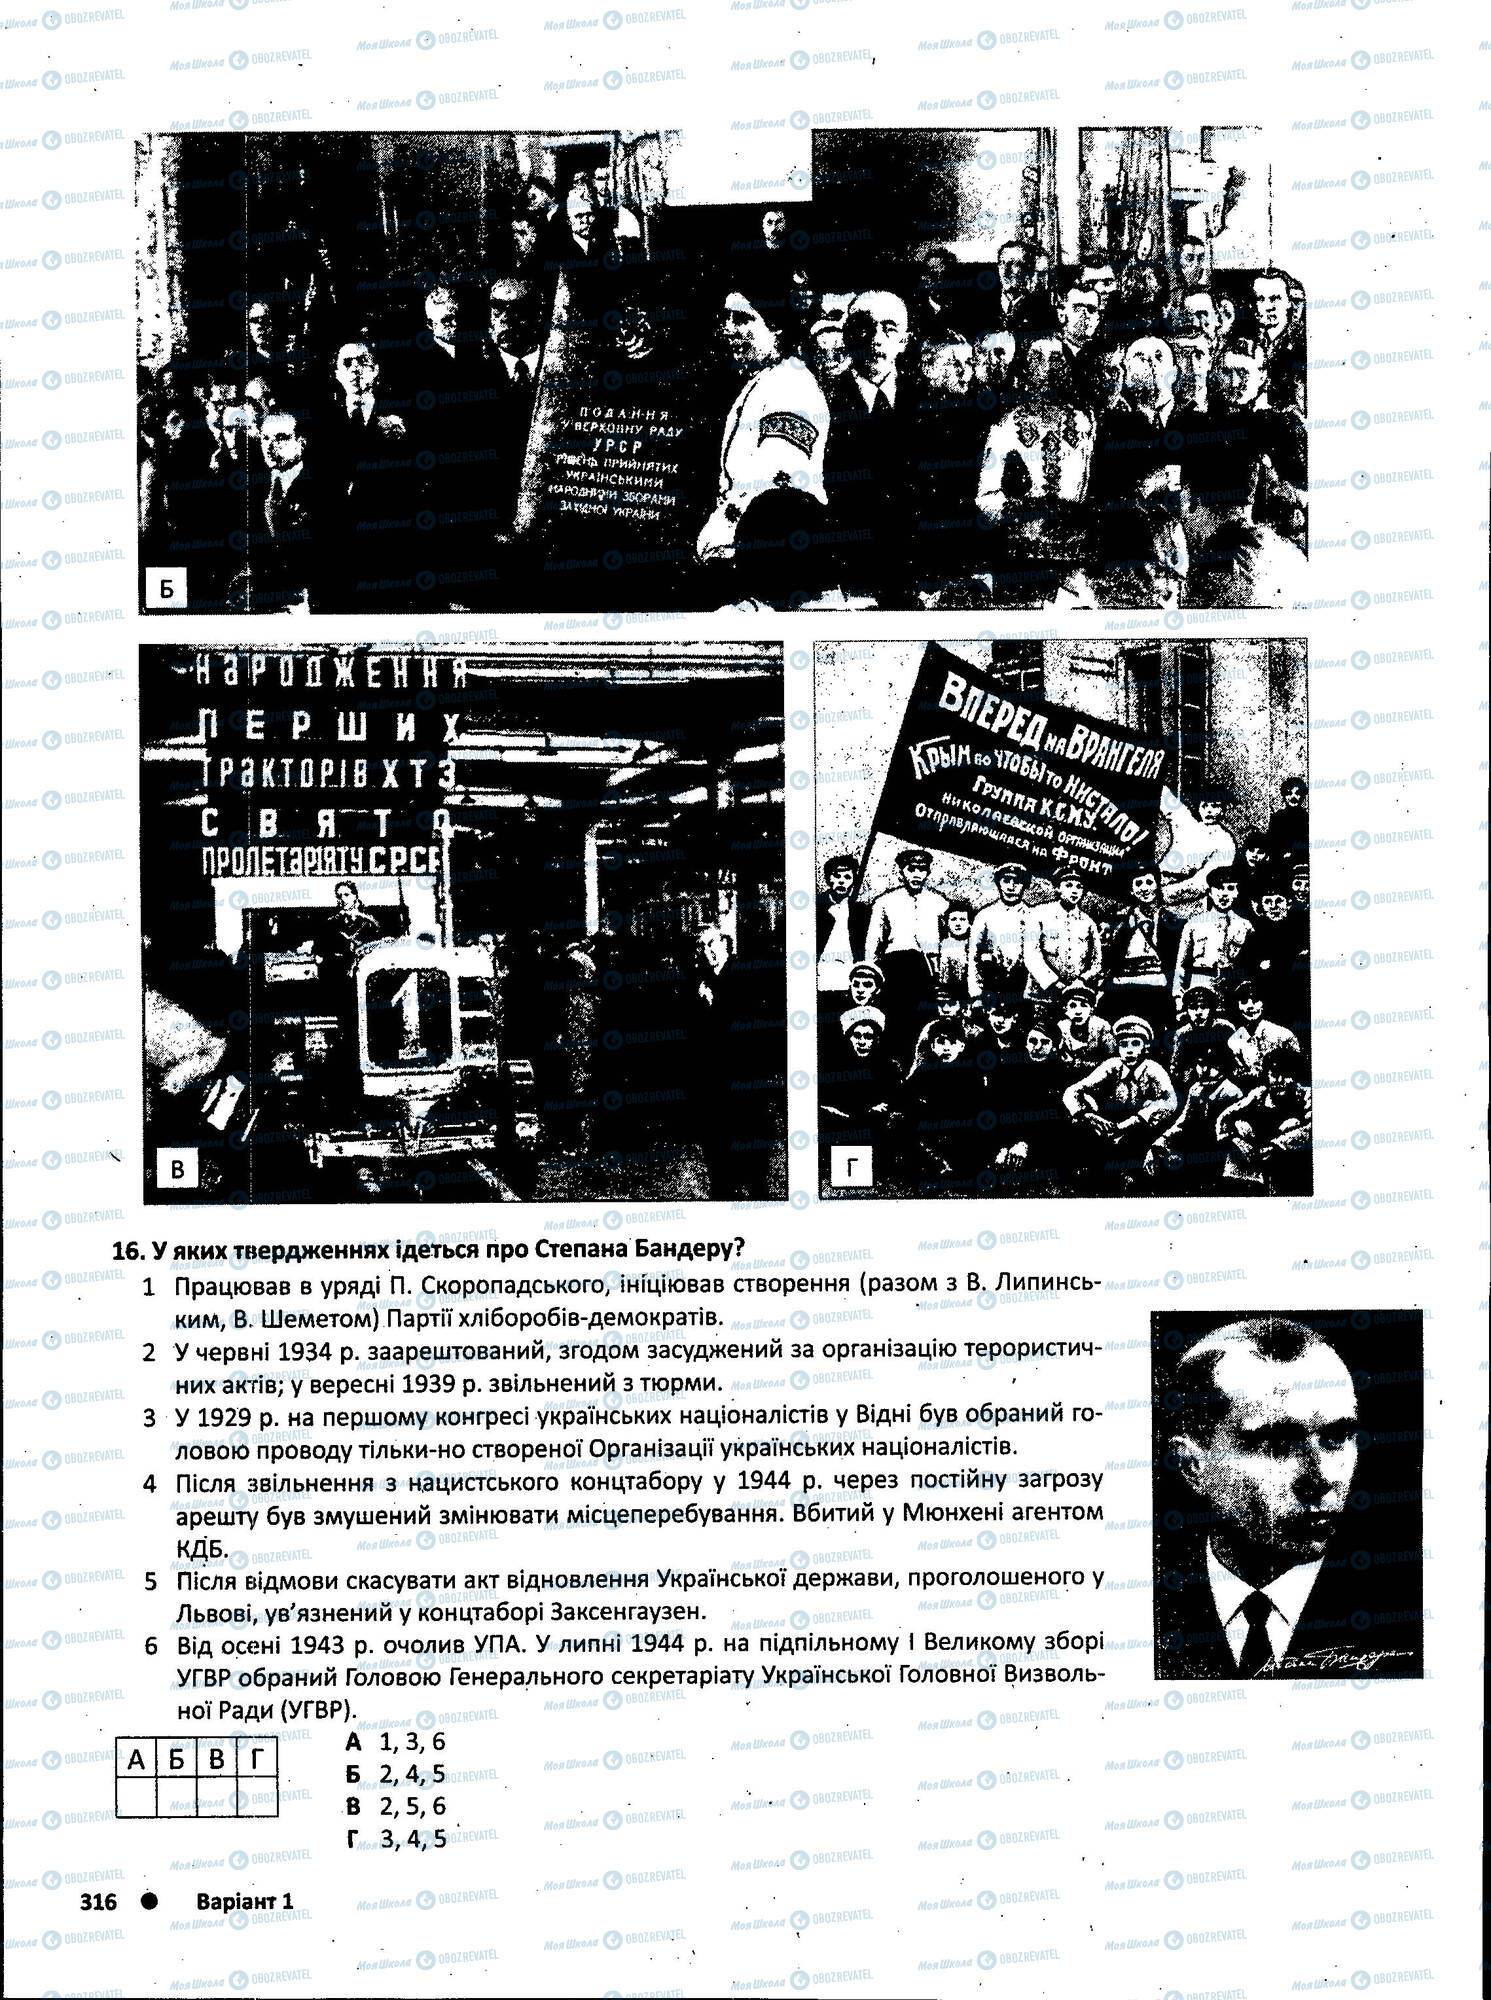 ЗНО История Украины 11 класс страница 316